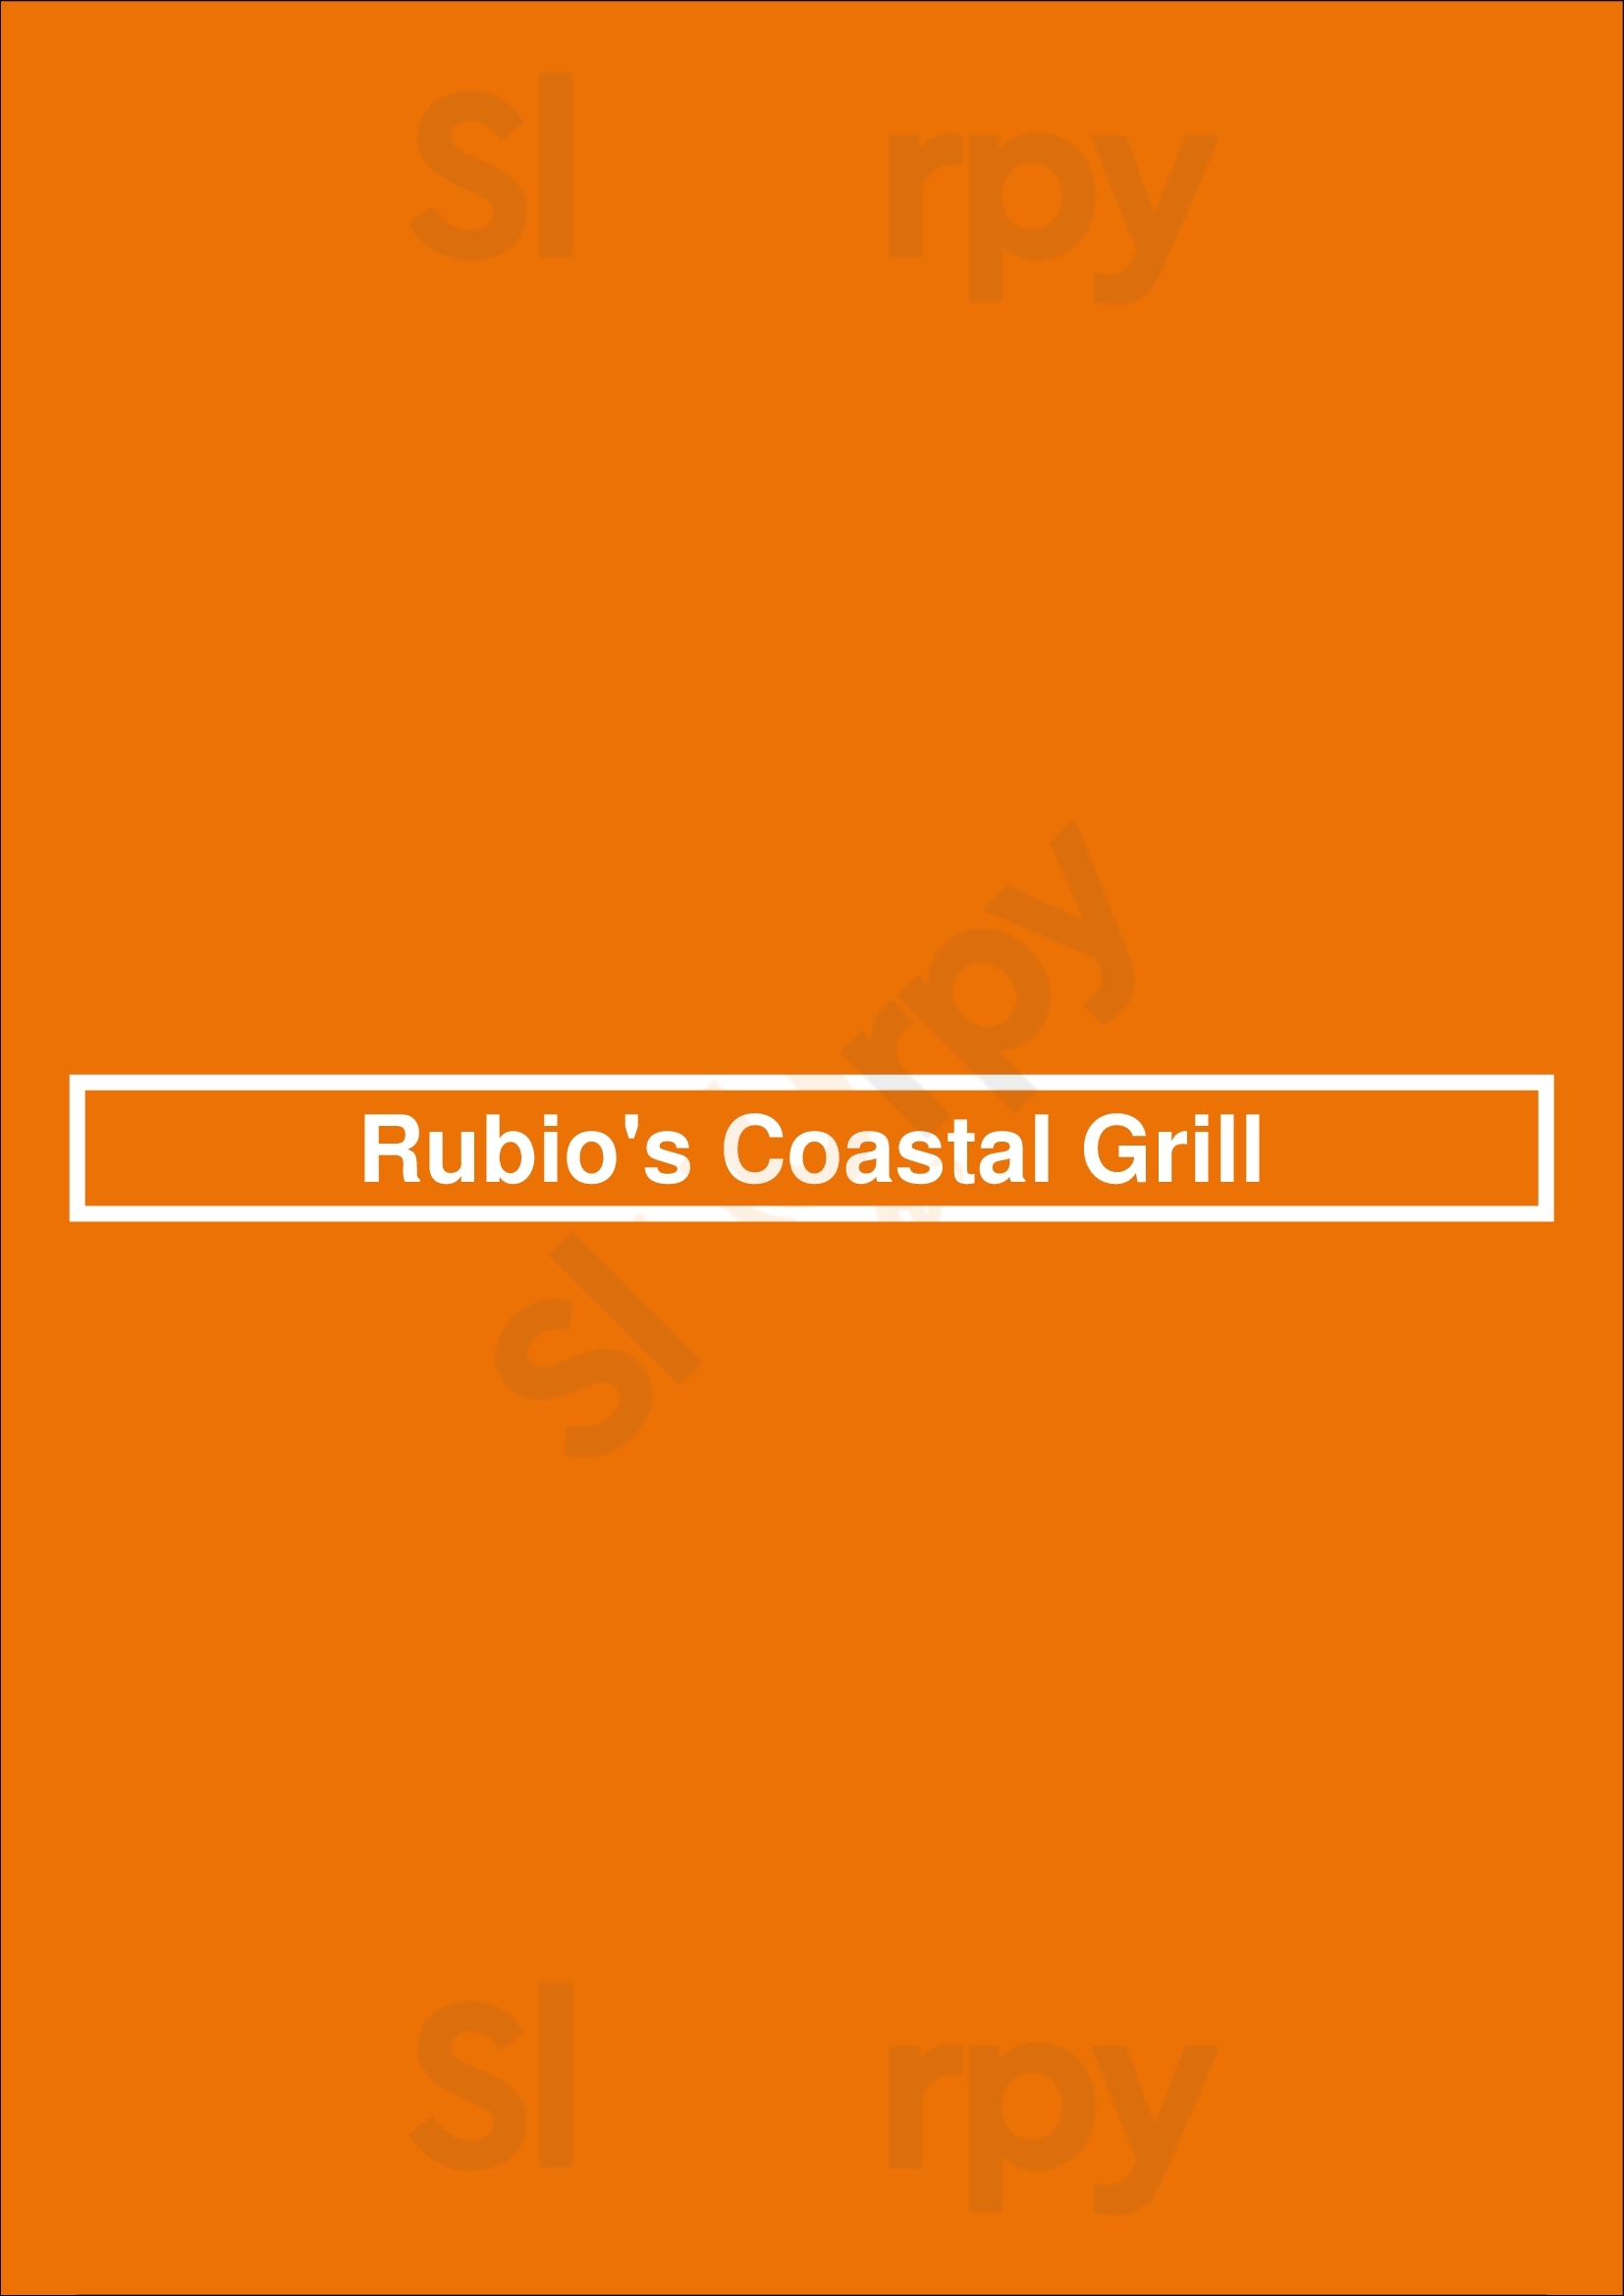 Rubio's Coastal Grill San Diego Menu - 1